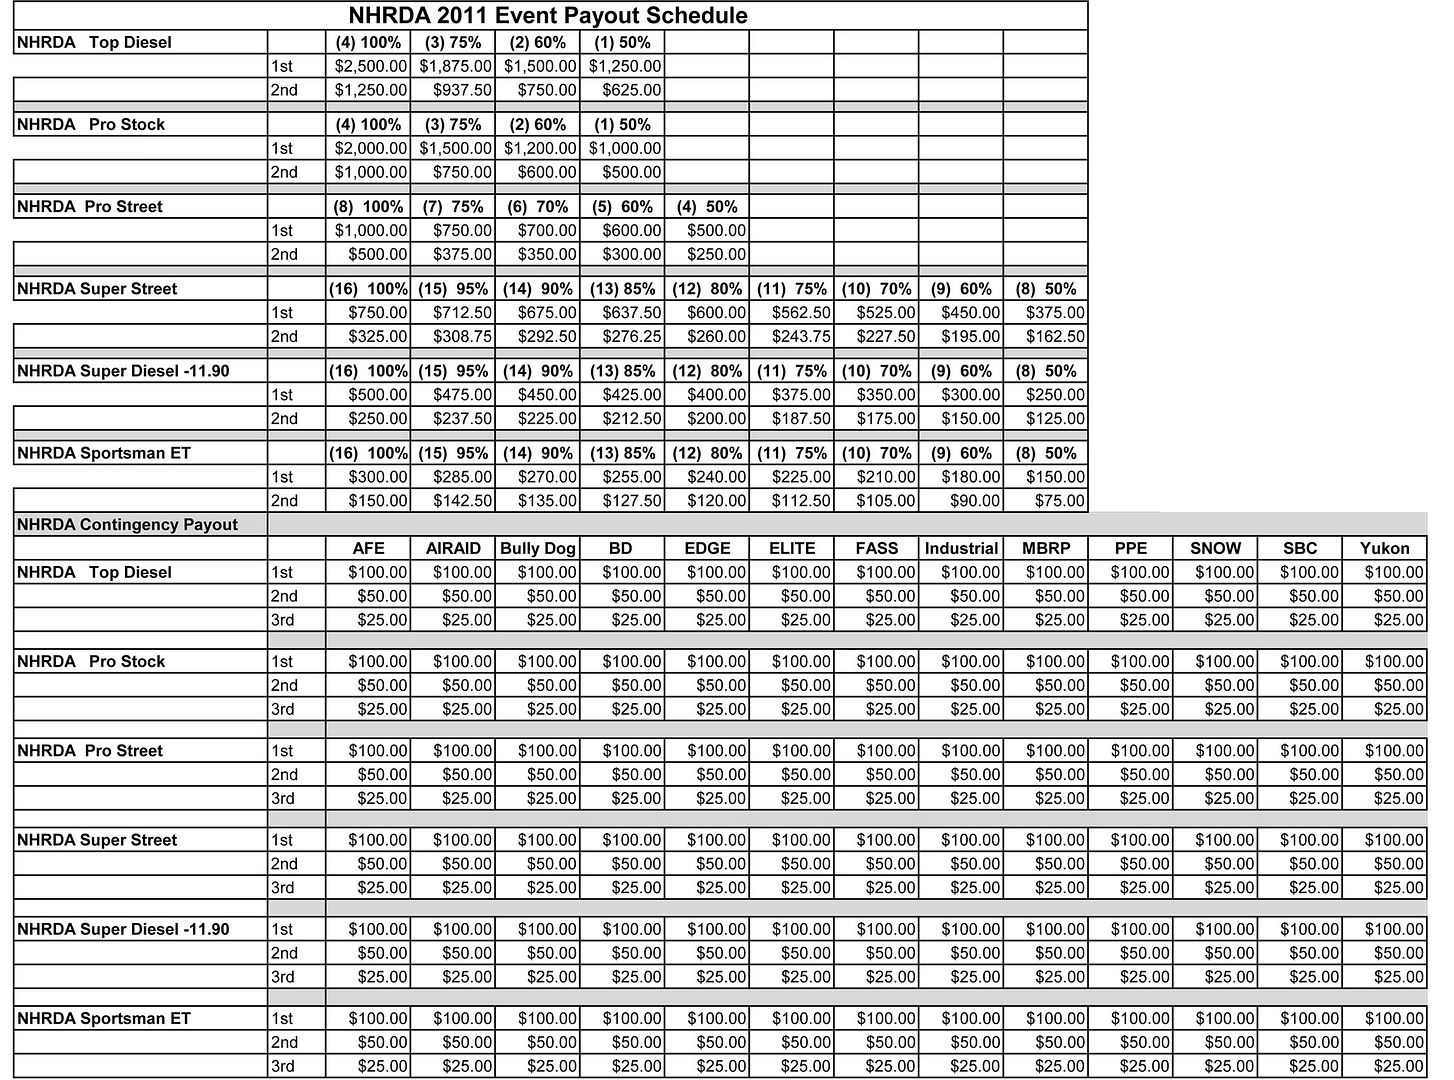 NHRDA-Payout-Schedule-2011.jpg